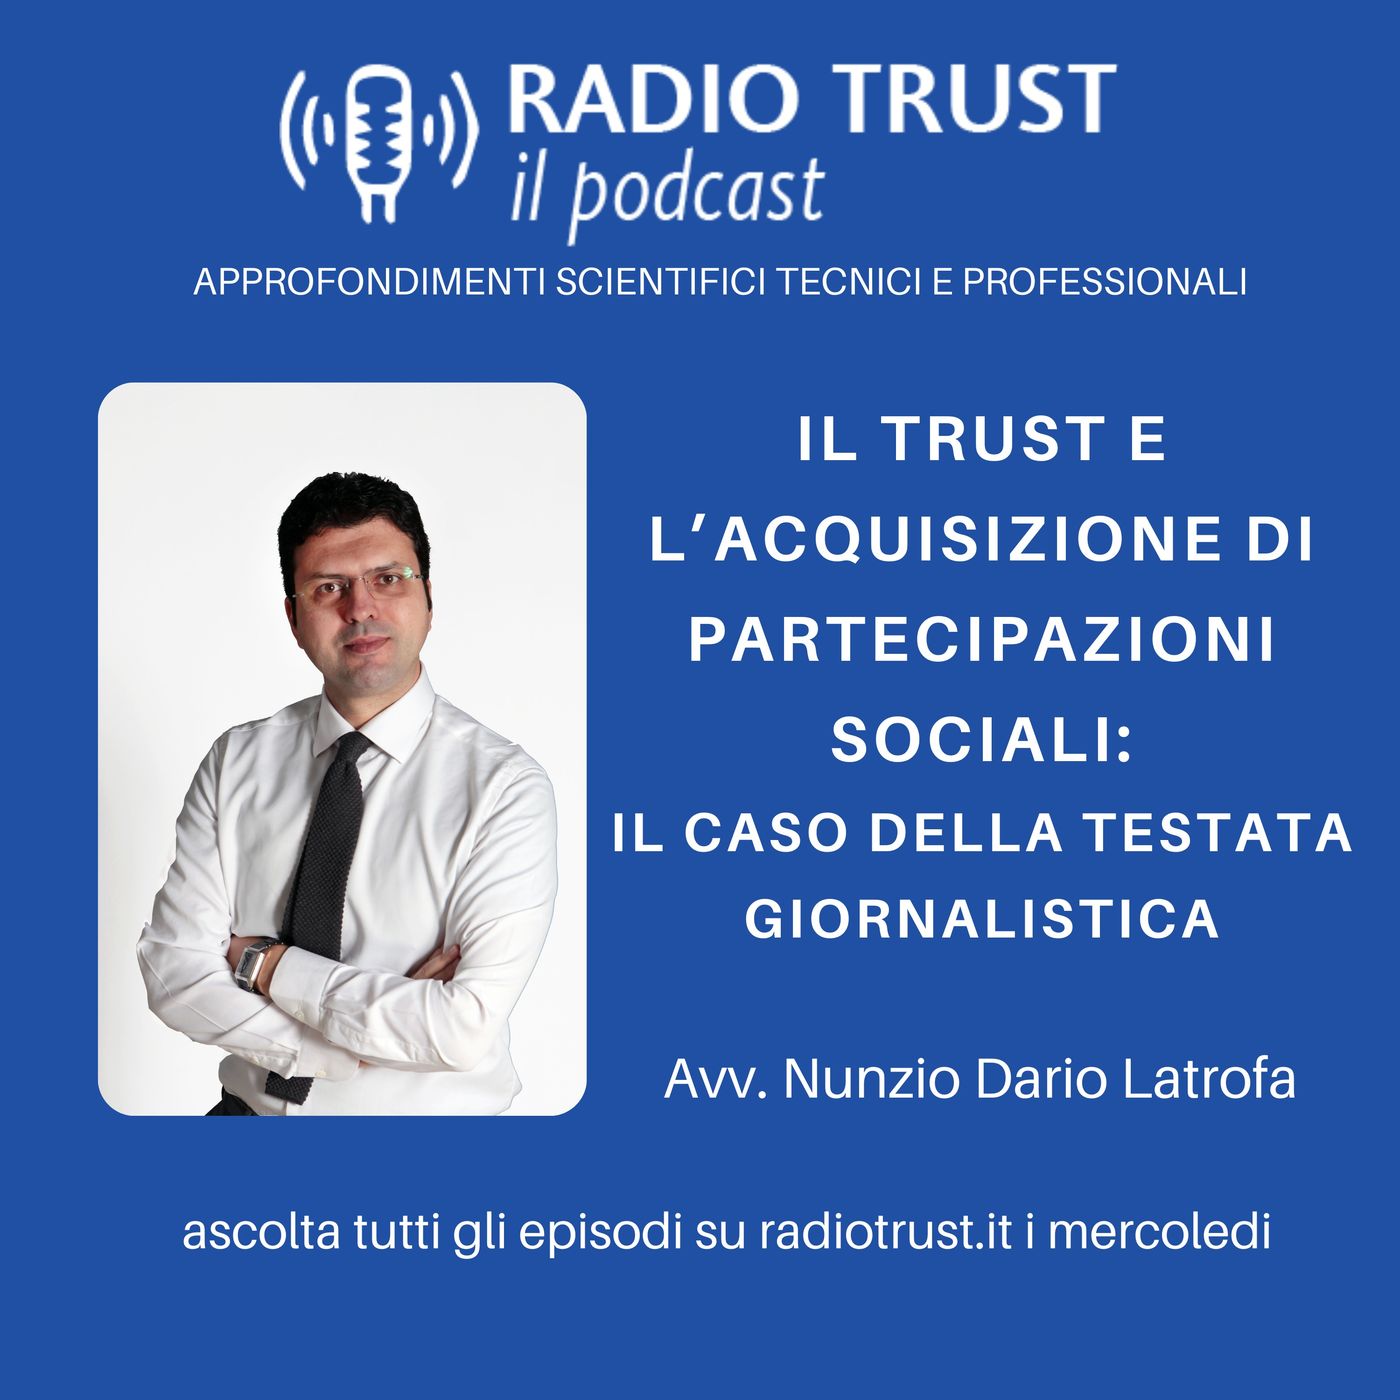 Il trust e l’acquisizione di partecipazioni sociali il caso della testata giornalistica - Avv Nunzio Dario Latrofa